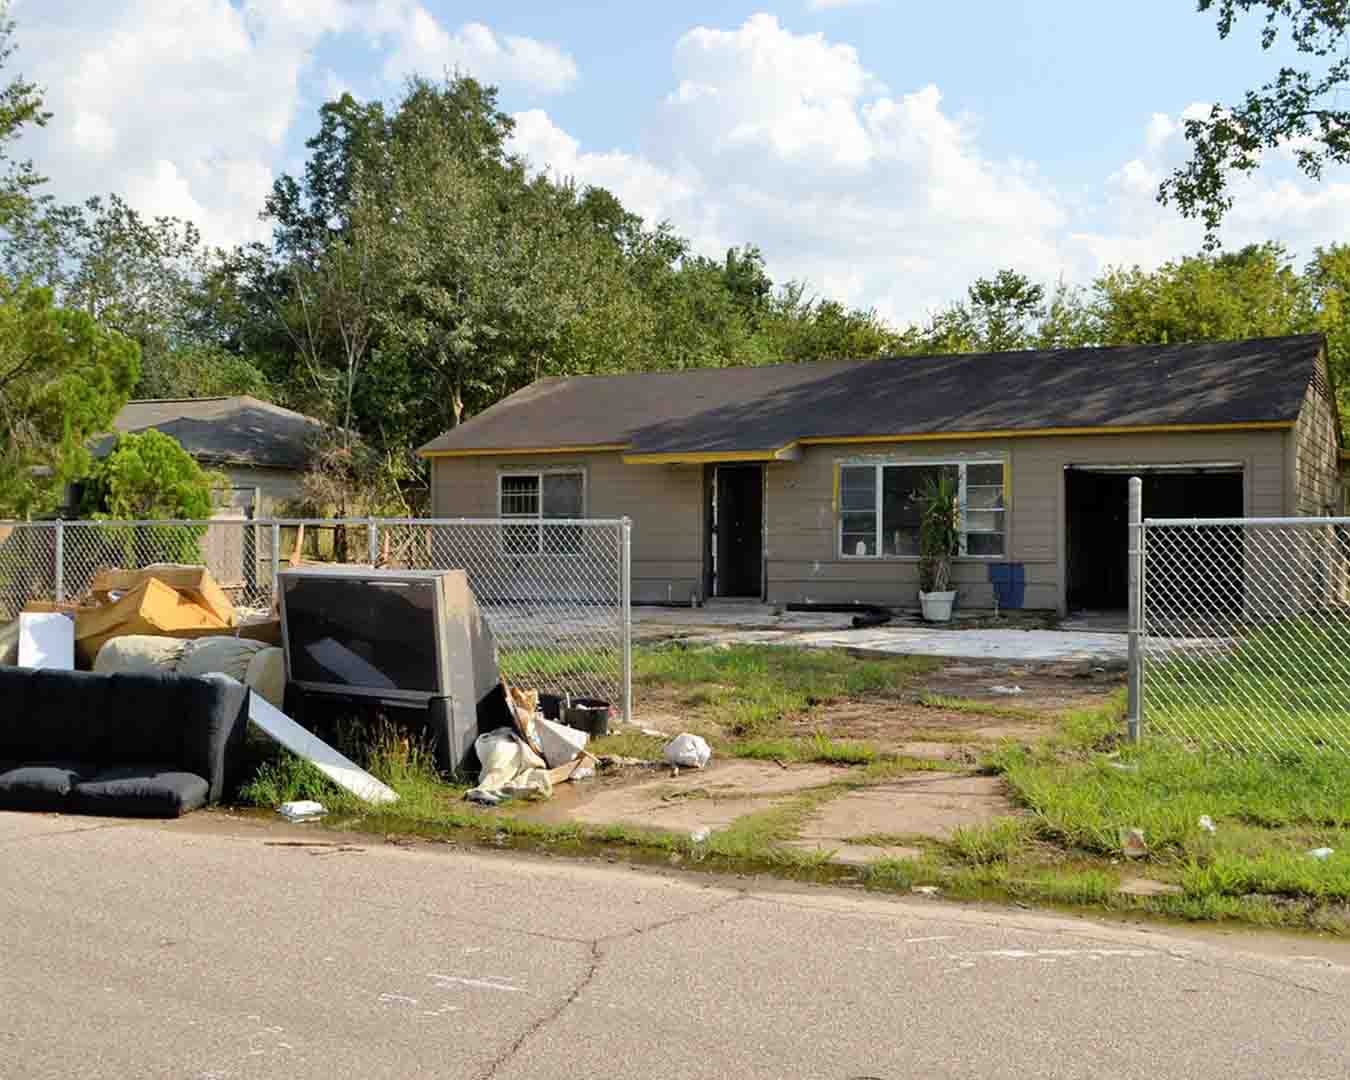  Houston Property Damage Lawyer